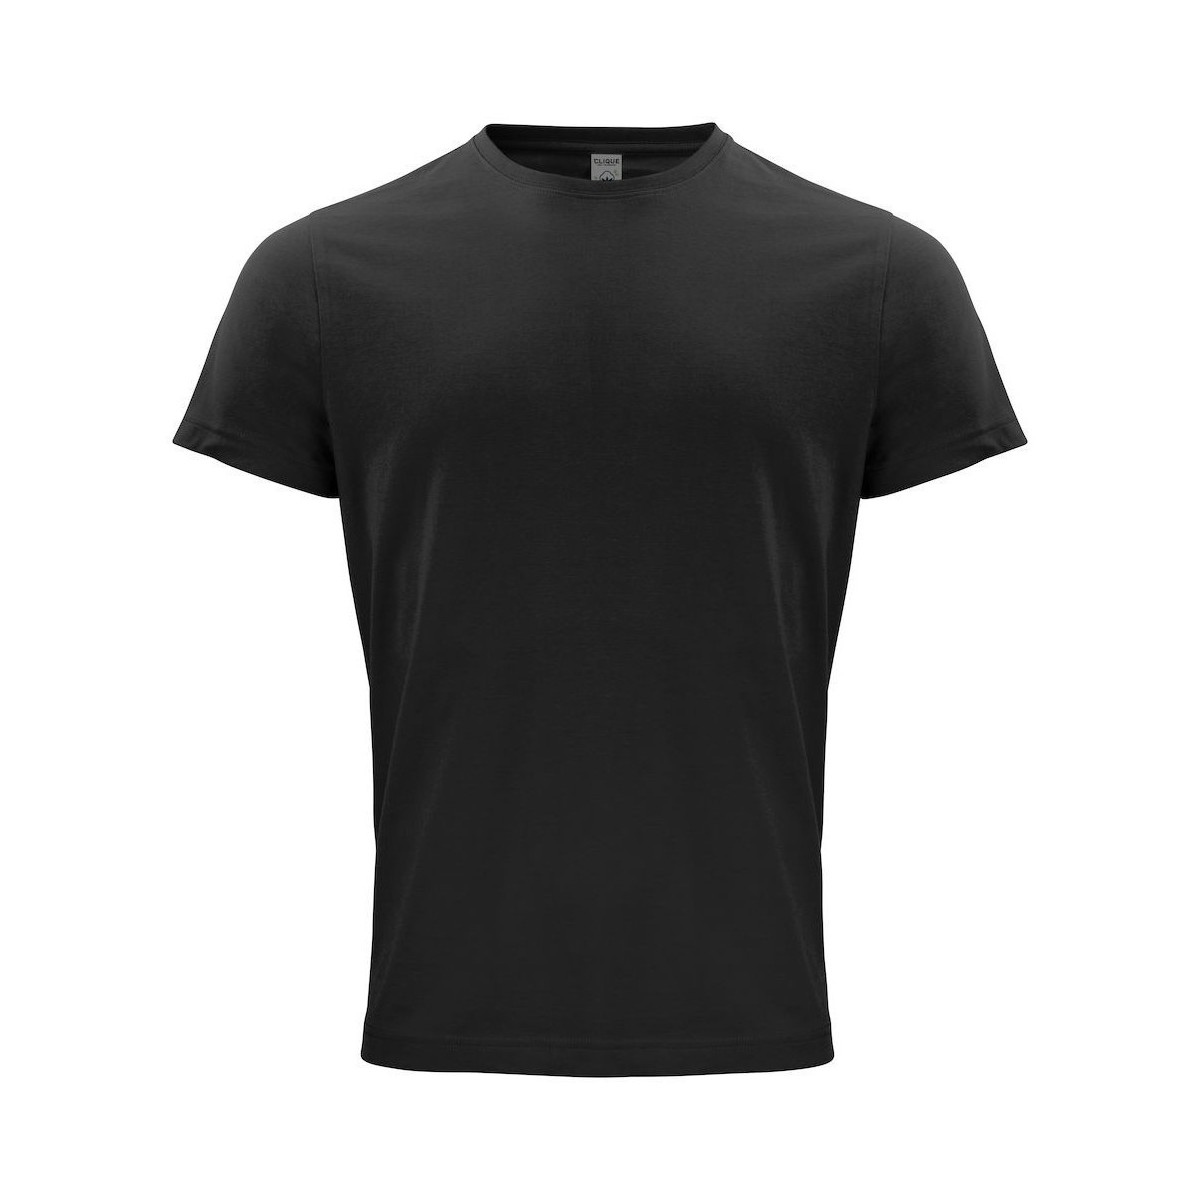 Vêtements Homme T-shirts manches longues C-Clique Classic OC Noir